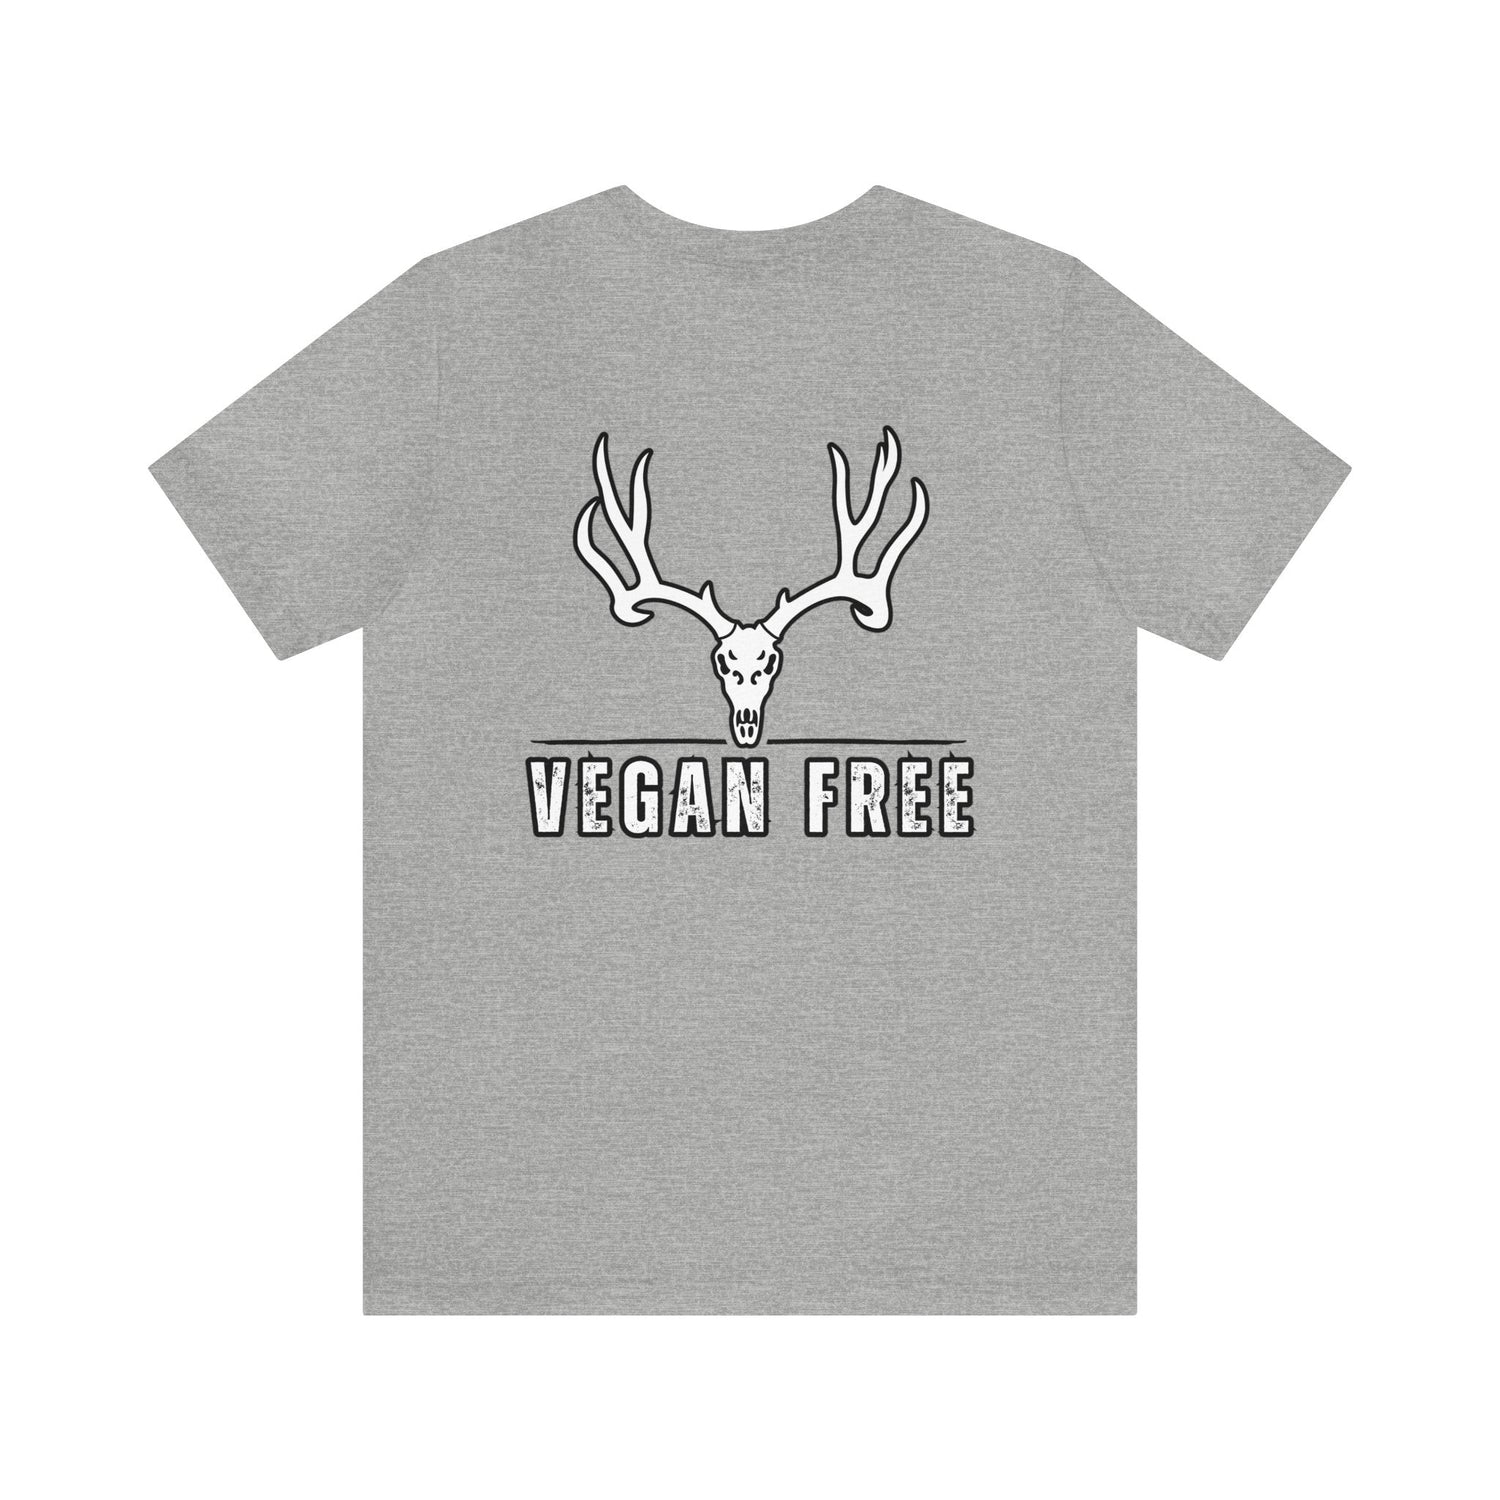 Western deer hunting t-shirt, color light grey, back design placement